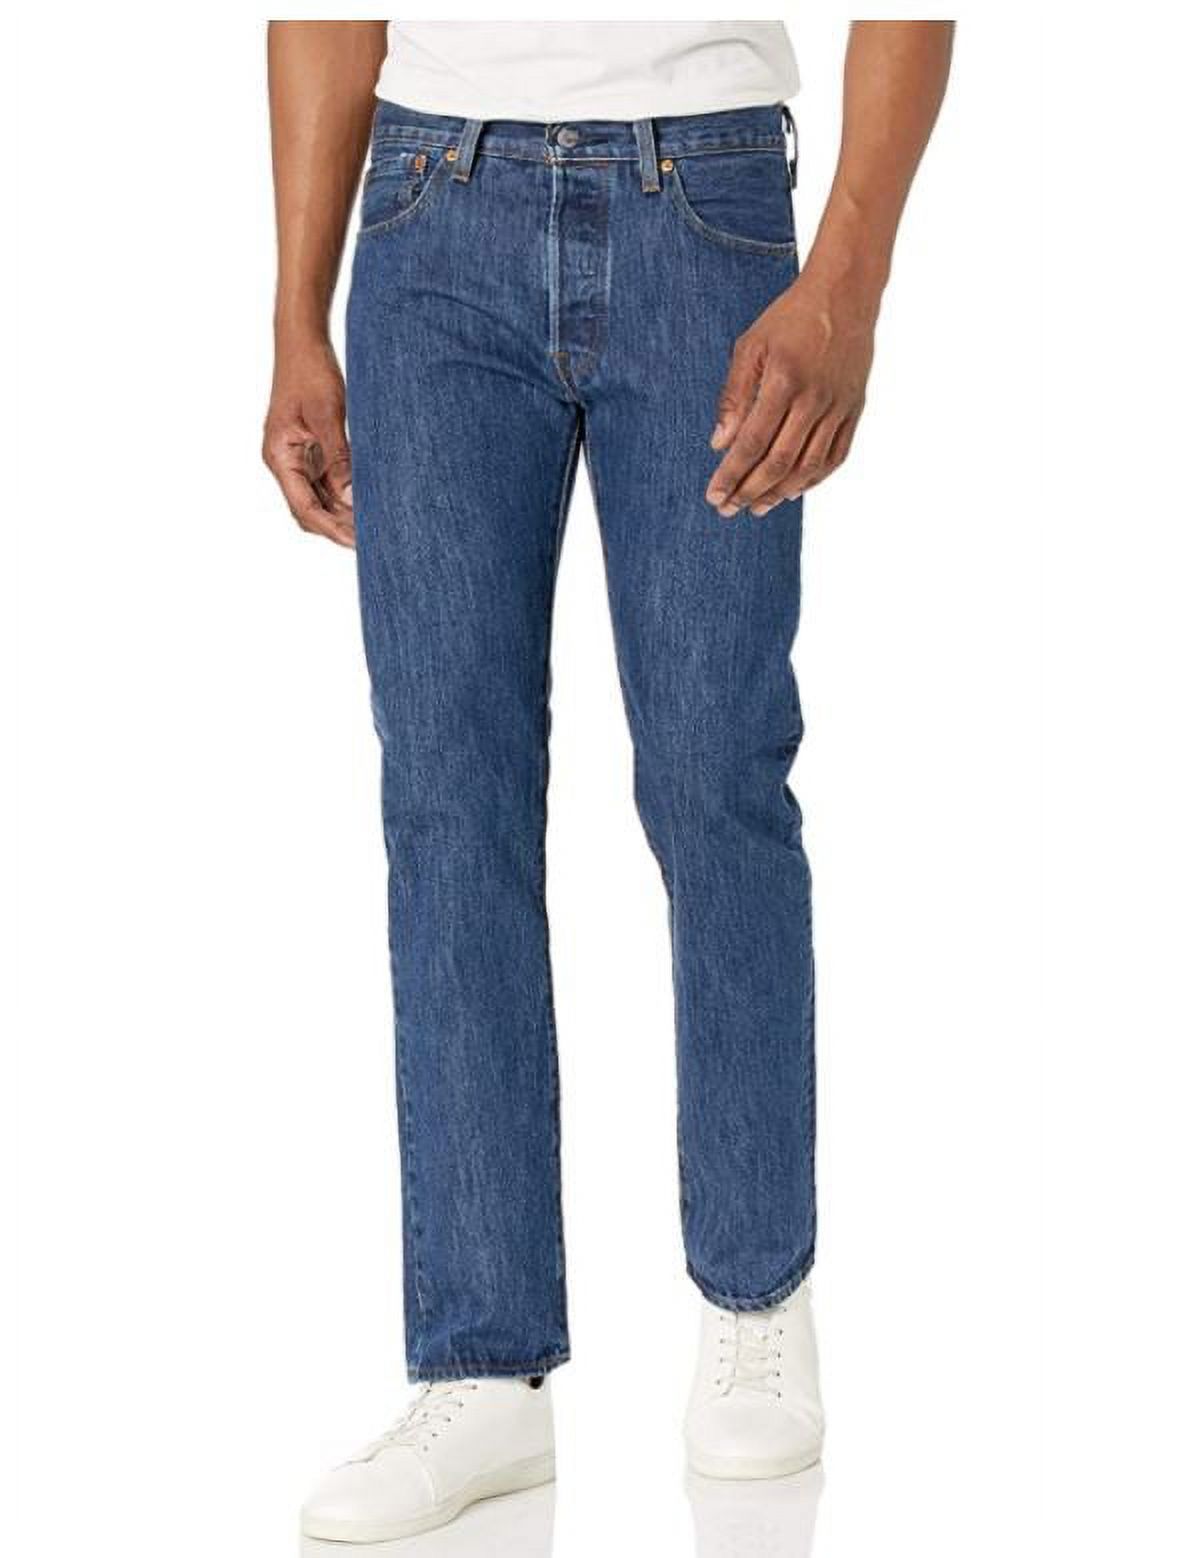 Levi's Men's 501 Original Fit Jeans - image 2 of 6